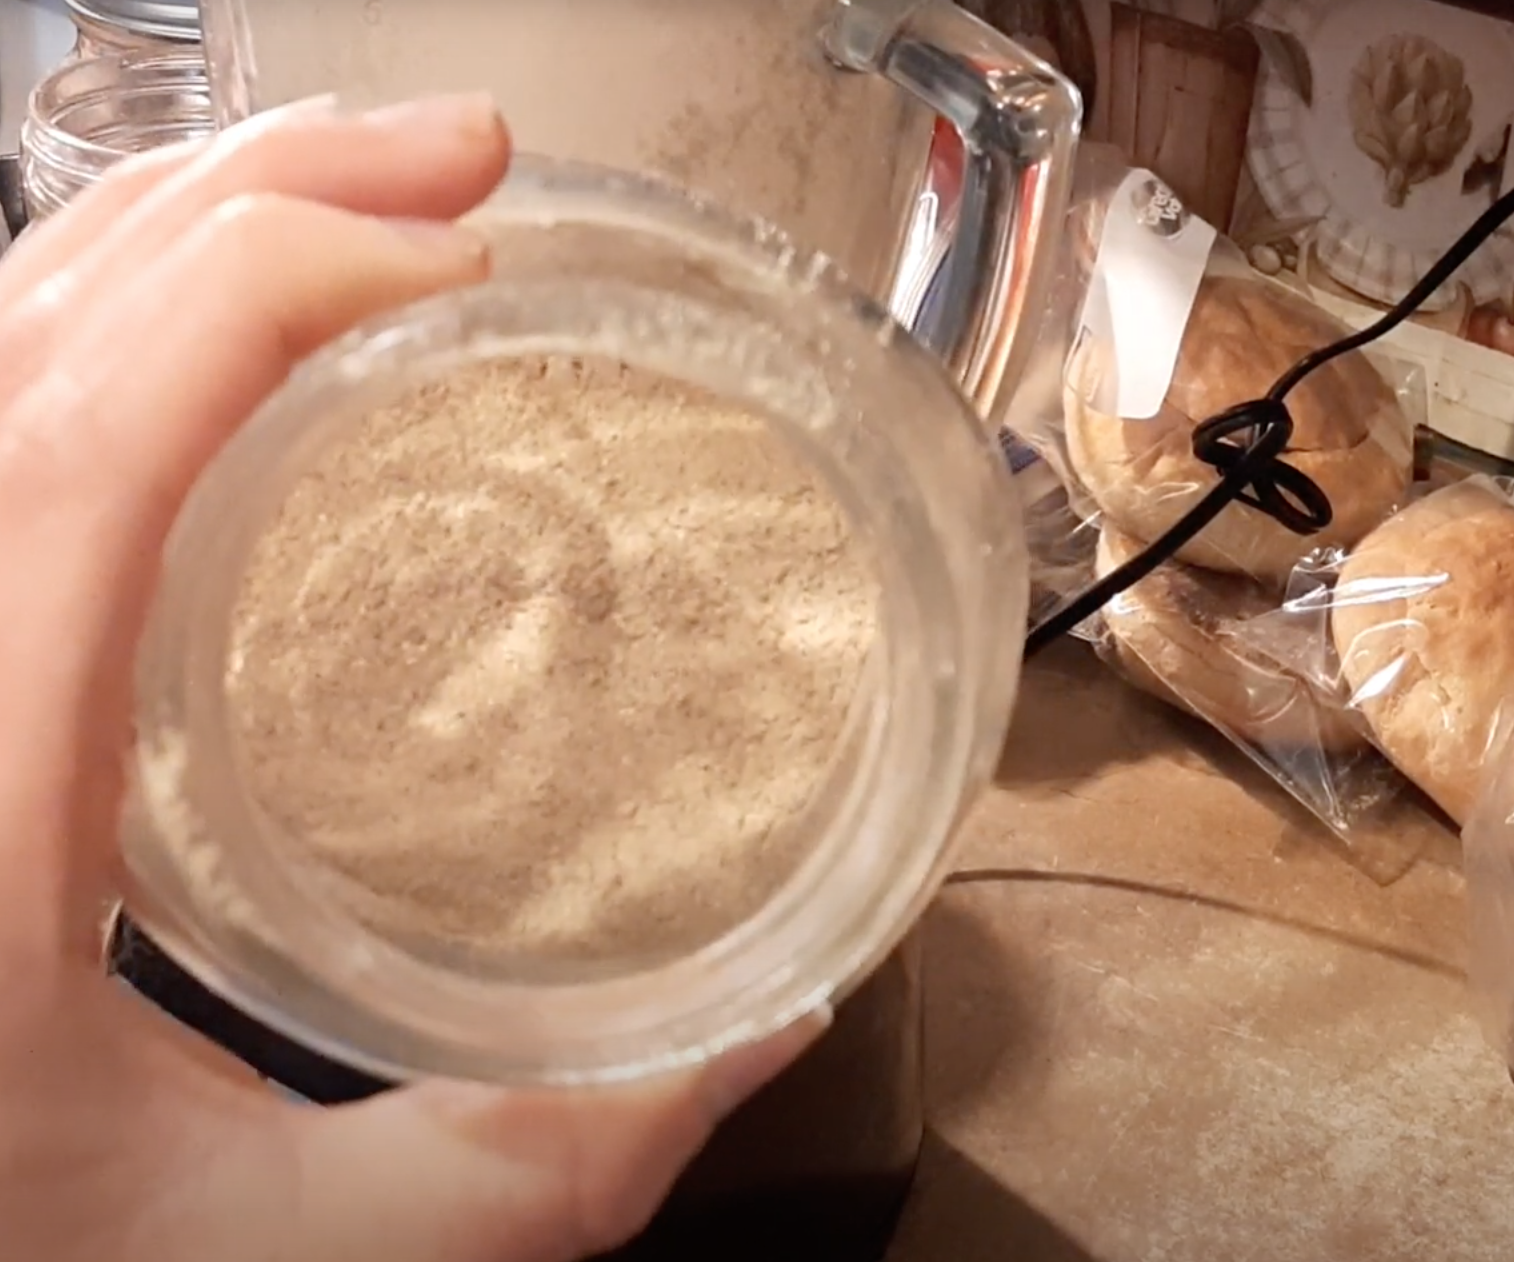 a jar of mushroom powder